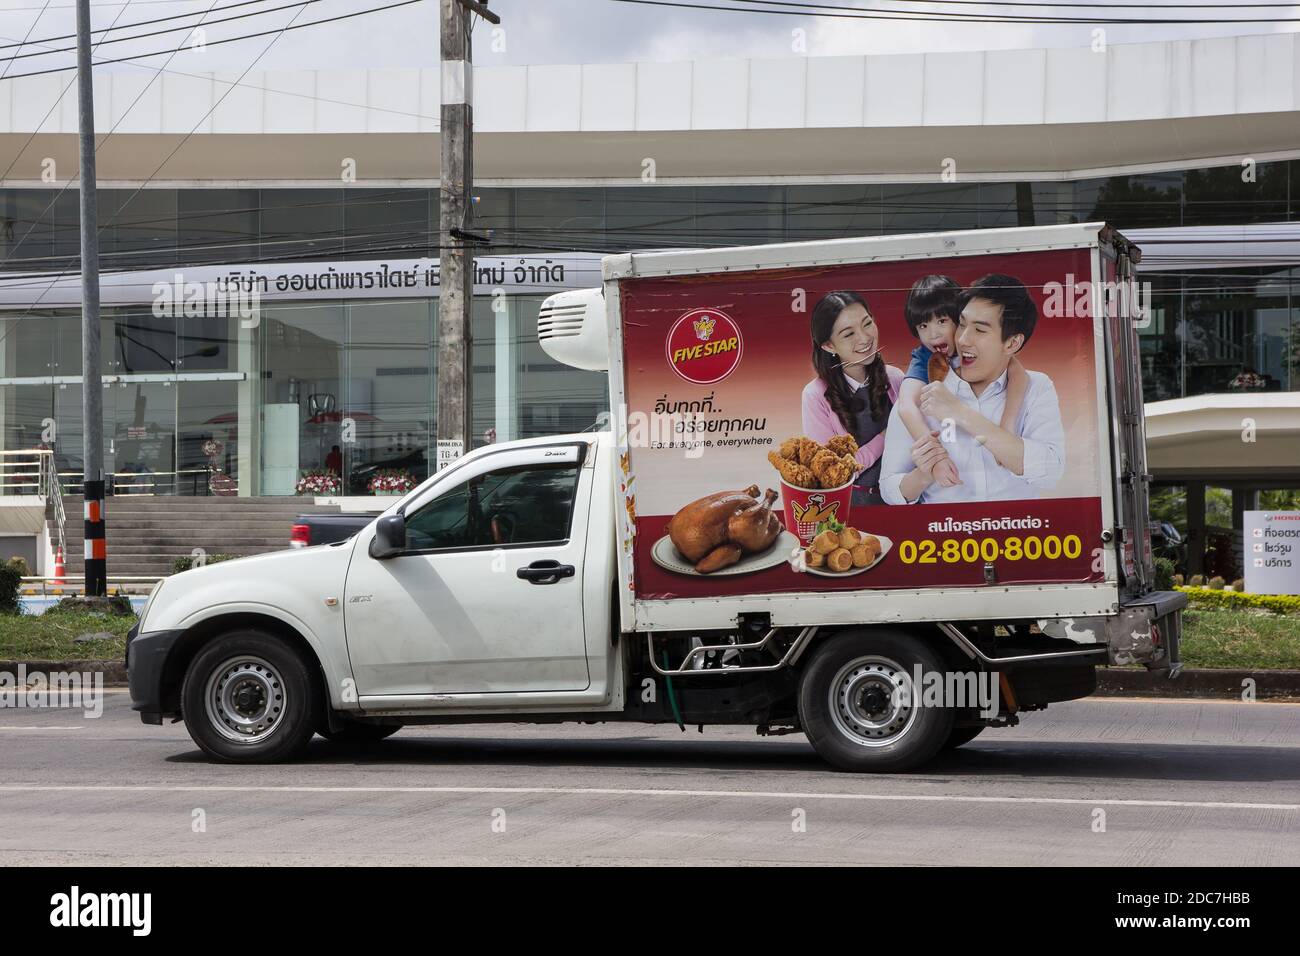 Chiangmai, Thaïlande - octobre 27 2020 : camion-conteneur de LA compagnie ALIMENTAIRE FIVE STAR. Photo sur la route n°121 à environ 8 km du centre-ville de Chiangmai en thaïlande. Banque D'Images